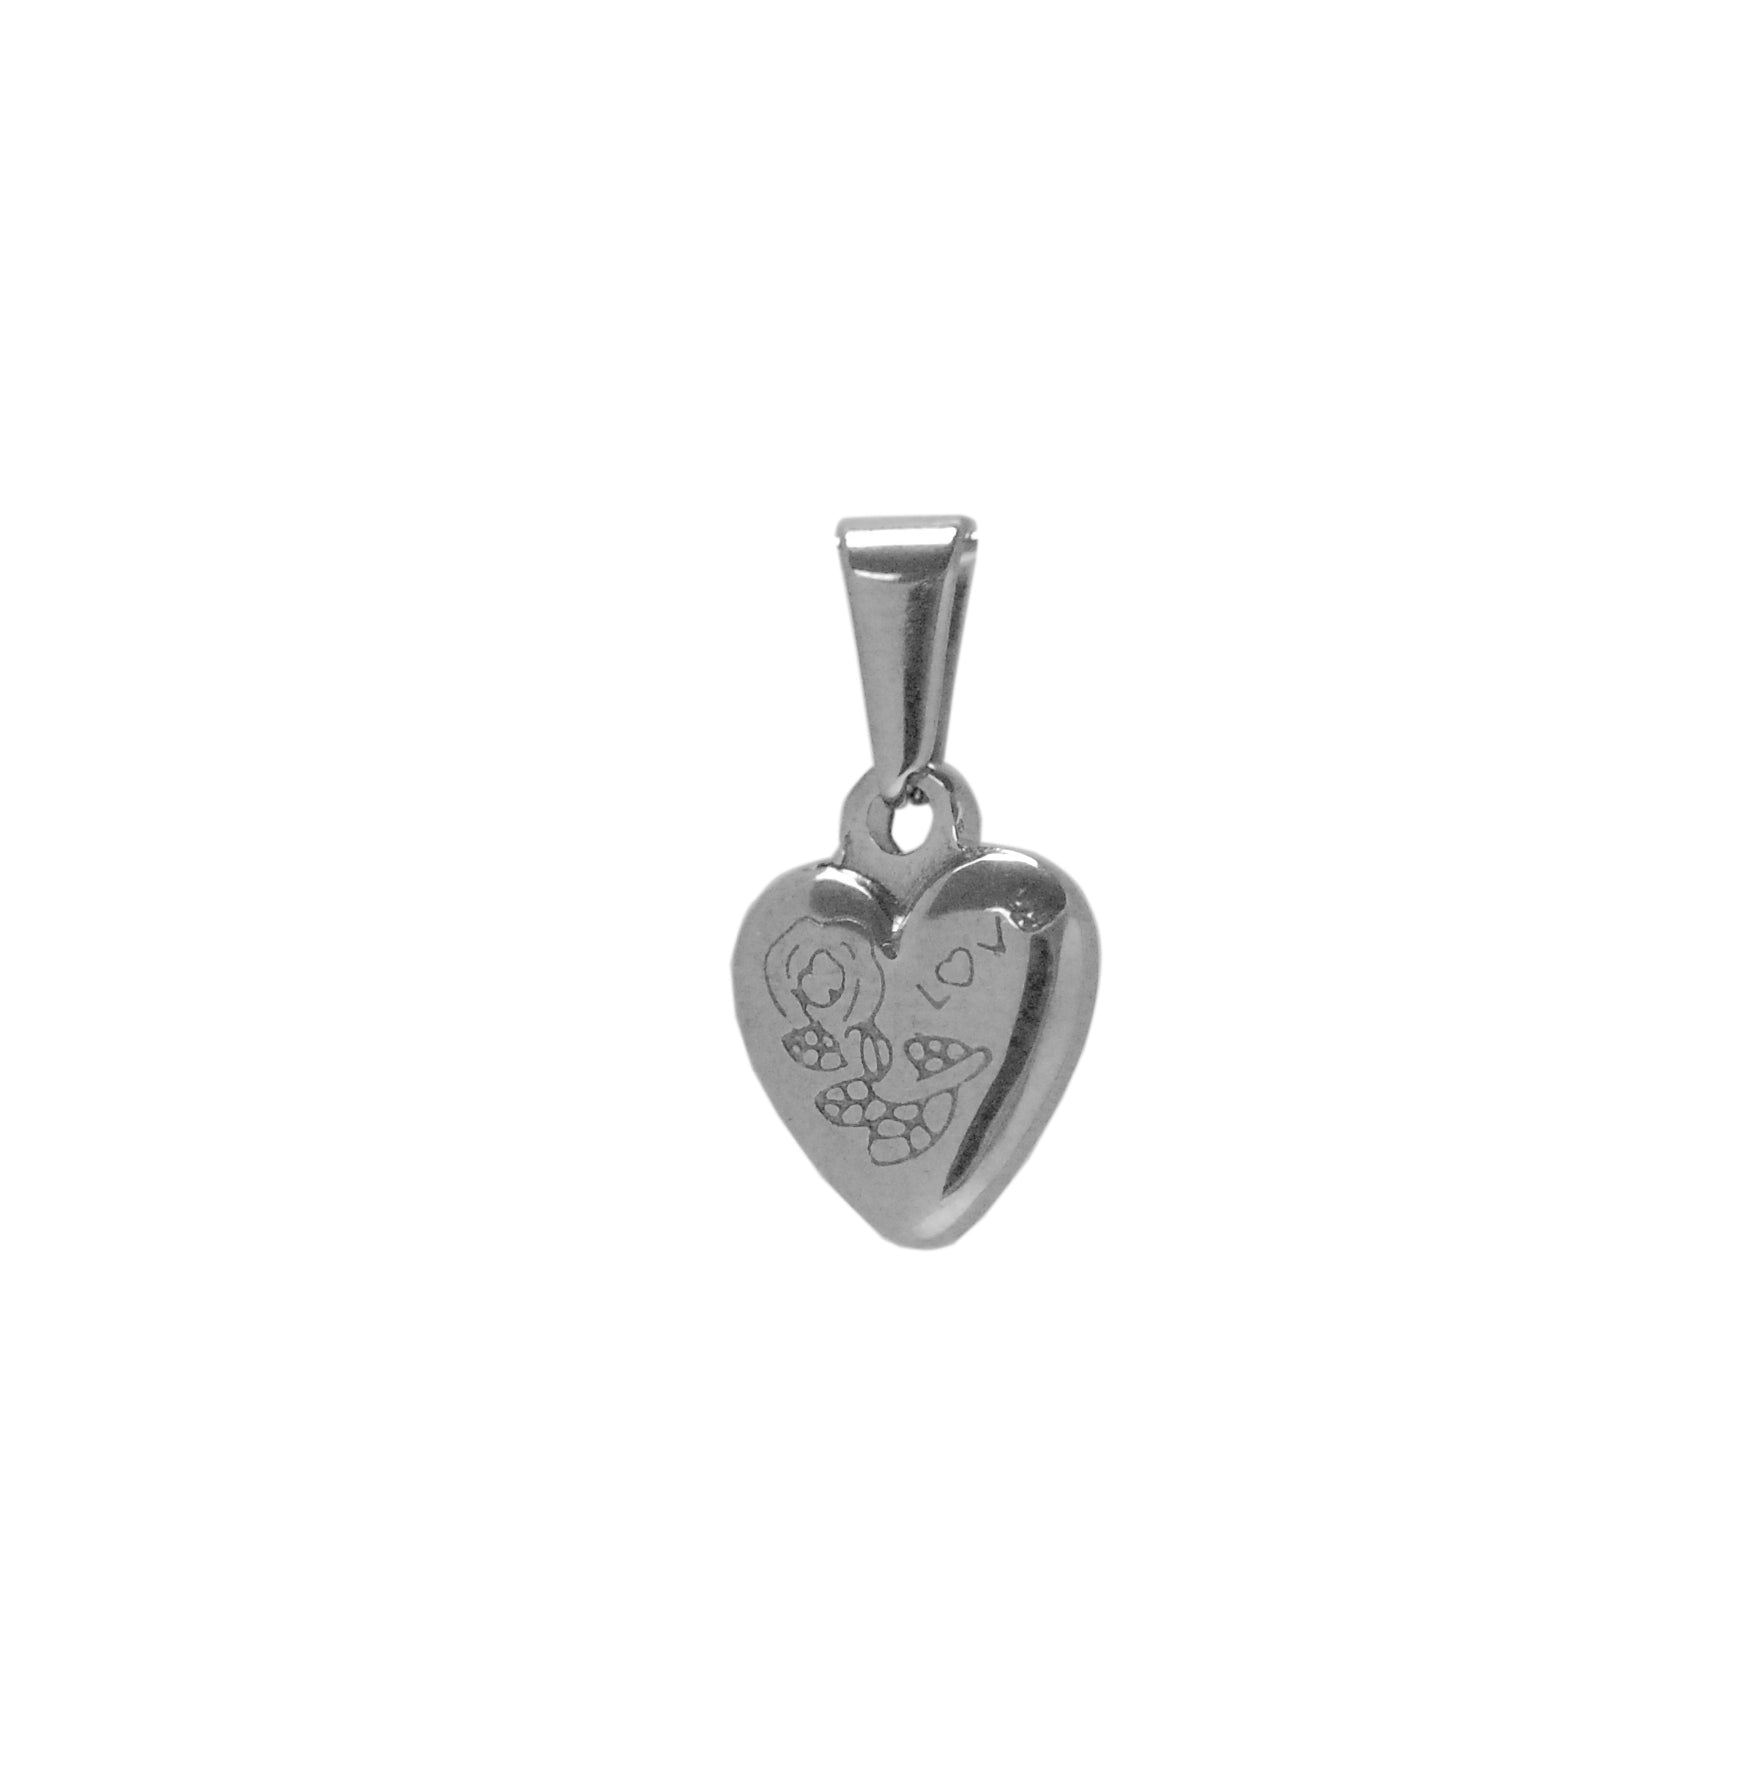 ESP 5669: Elongated Heart Pendant w/ Secret Love Message